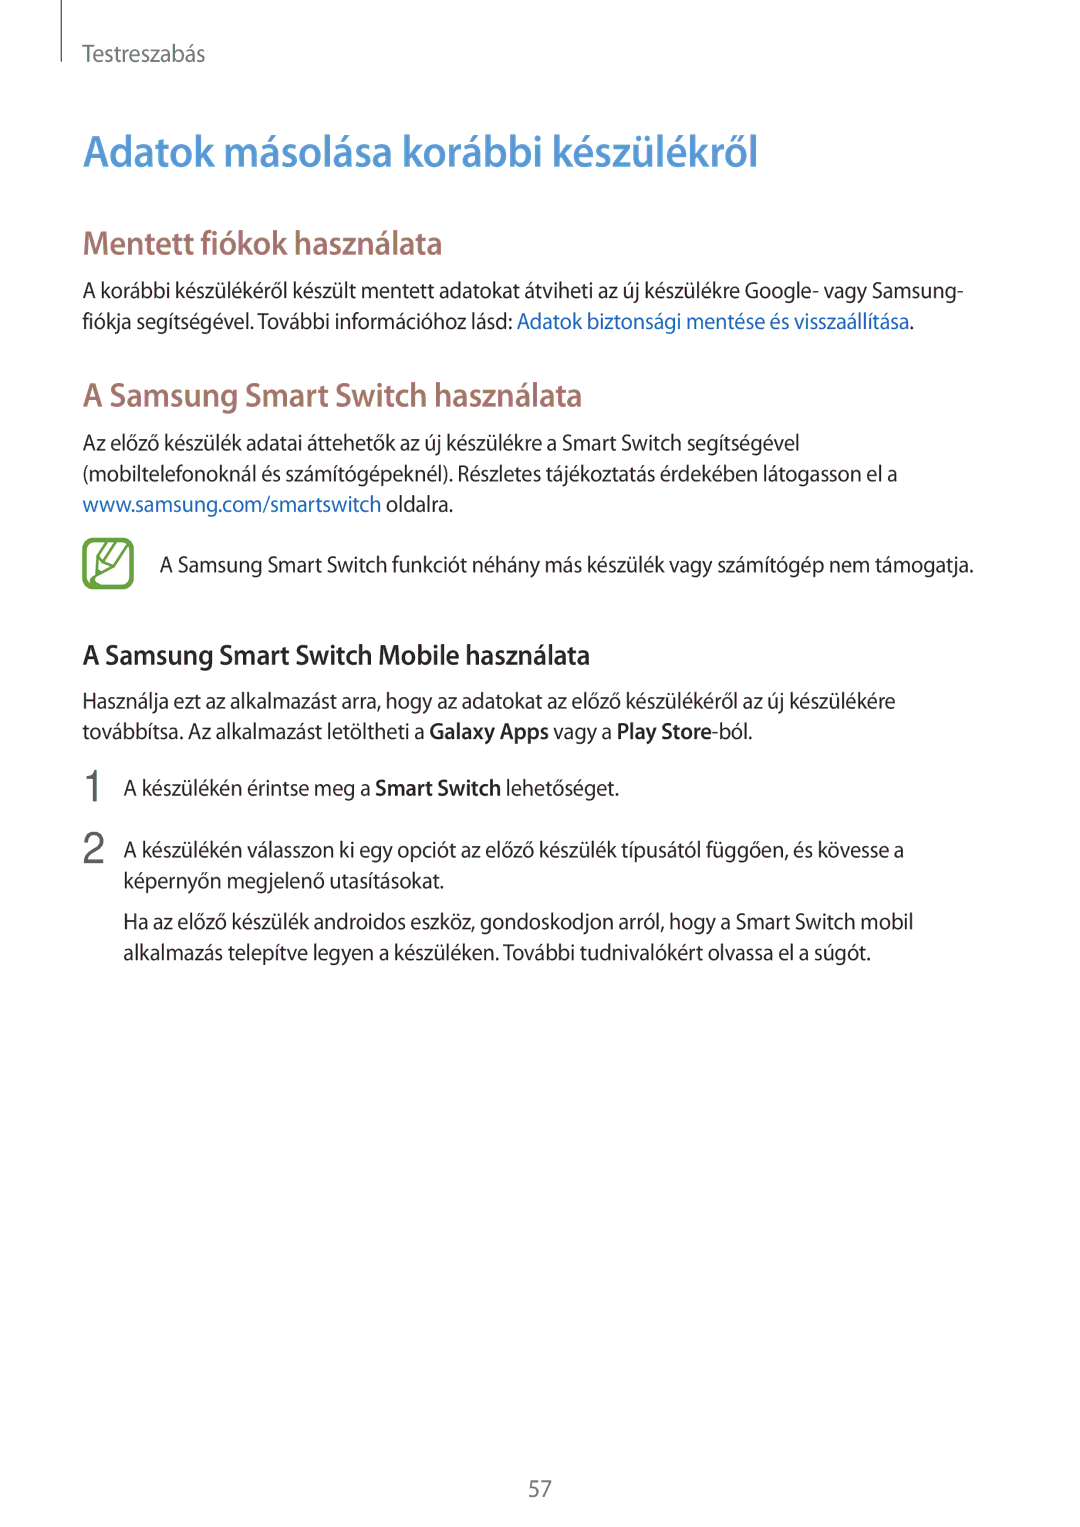 Samsung SM-T800NZWAXEO Adatok másolása korábbi készülékről, Mentett fiókok használata, Samsung Smart Switch használata 